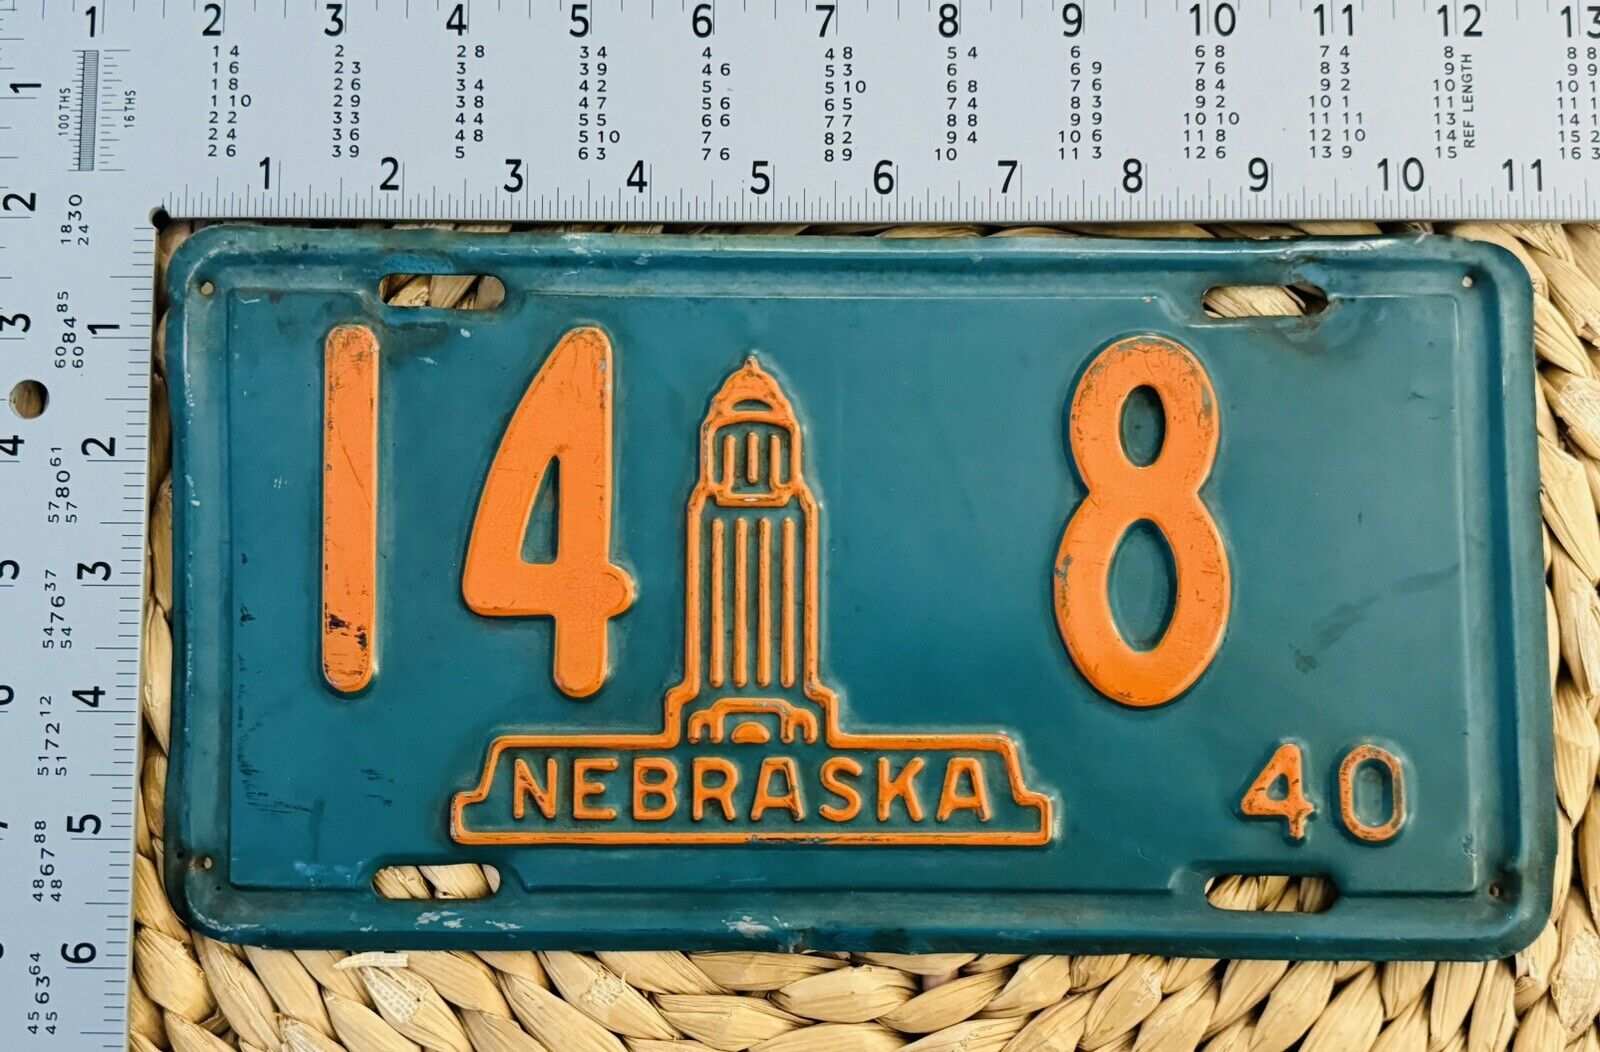 1940 Nebraska License Plate 14-8 ALPCA Garage Decor State Capital Building Image